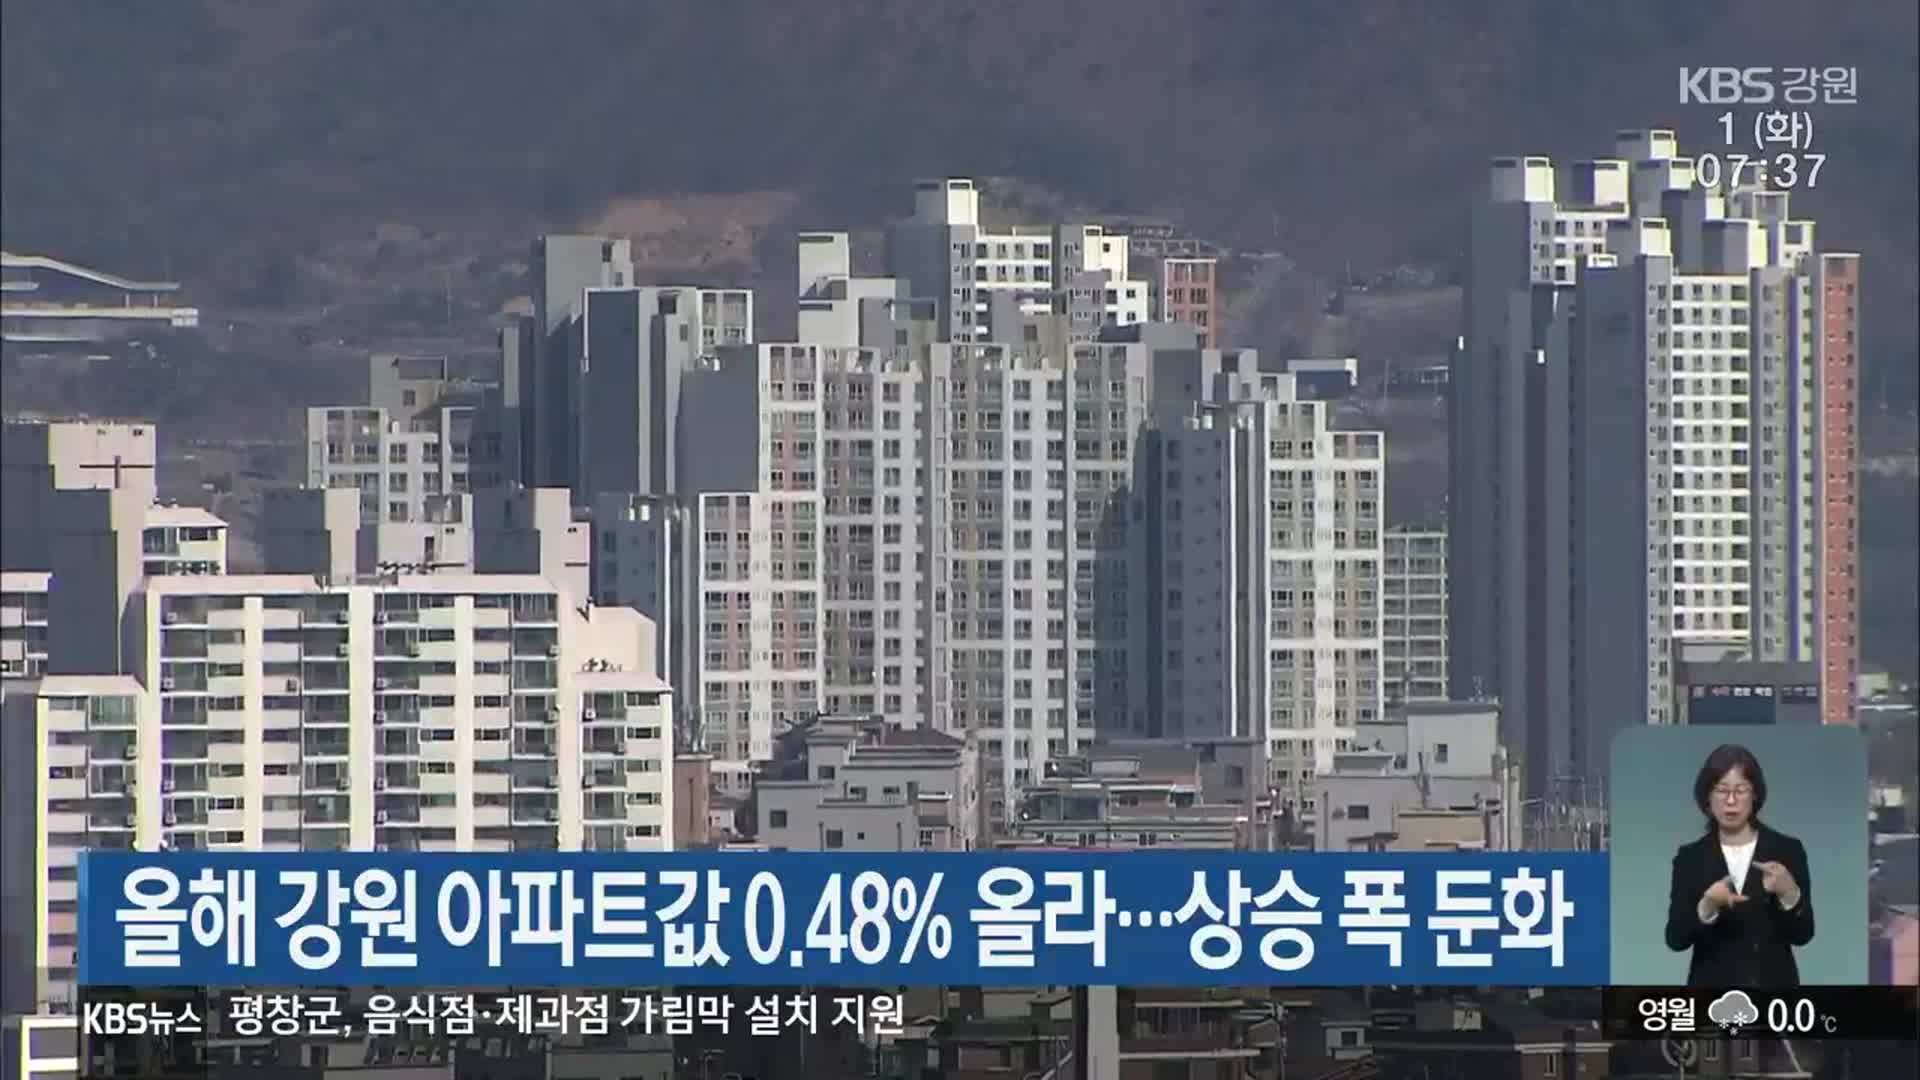 올해 강원 아파트값 0.48% 올라…상승 폭 둔화